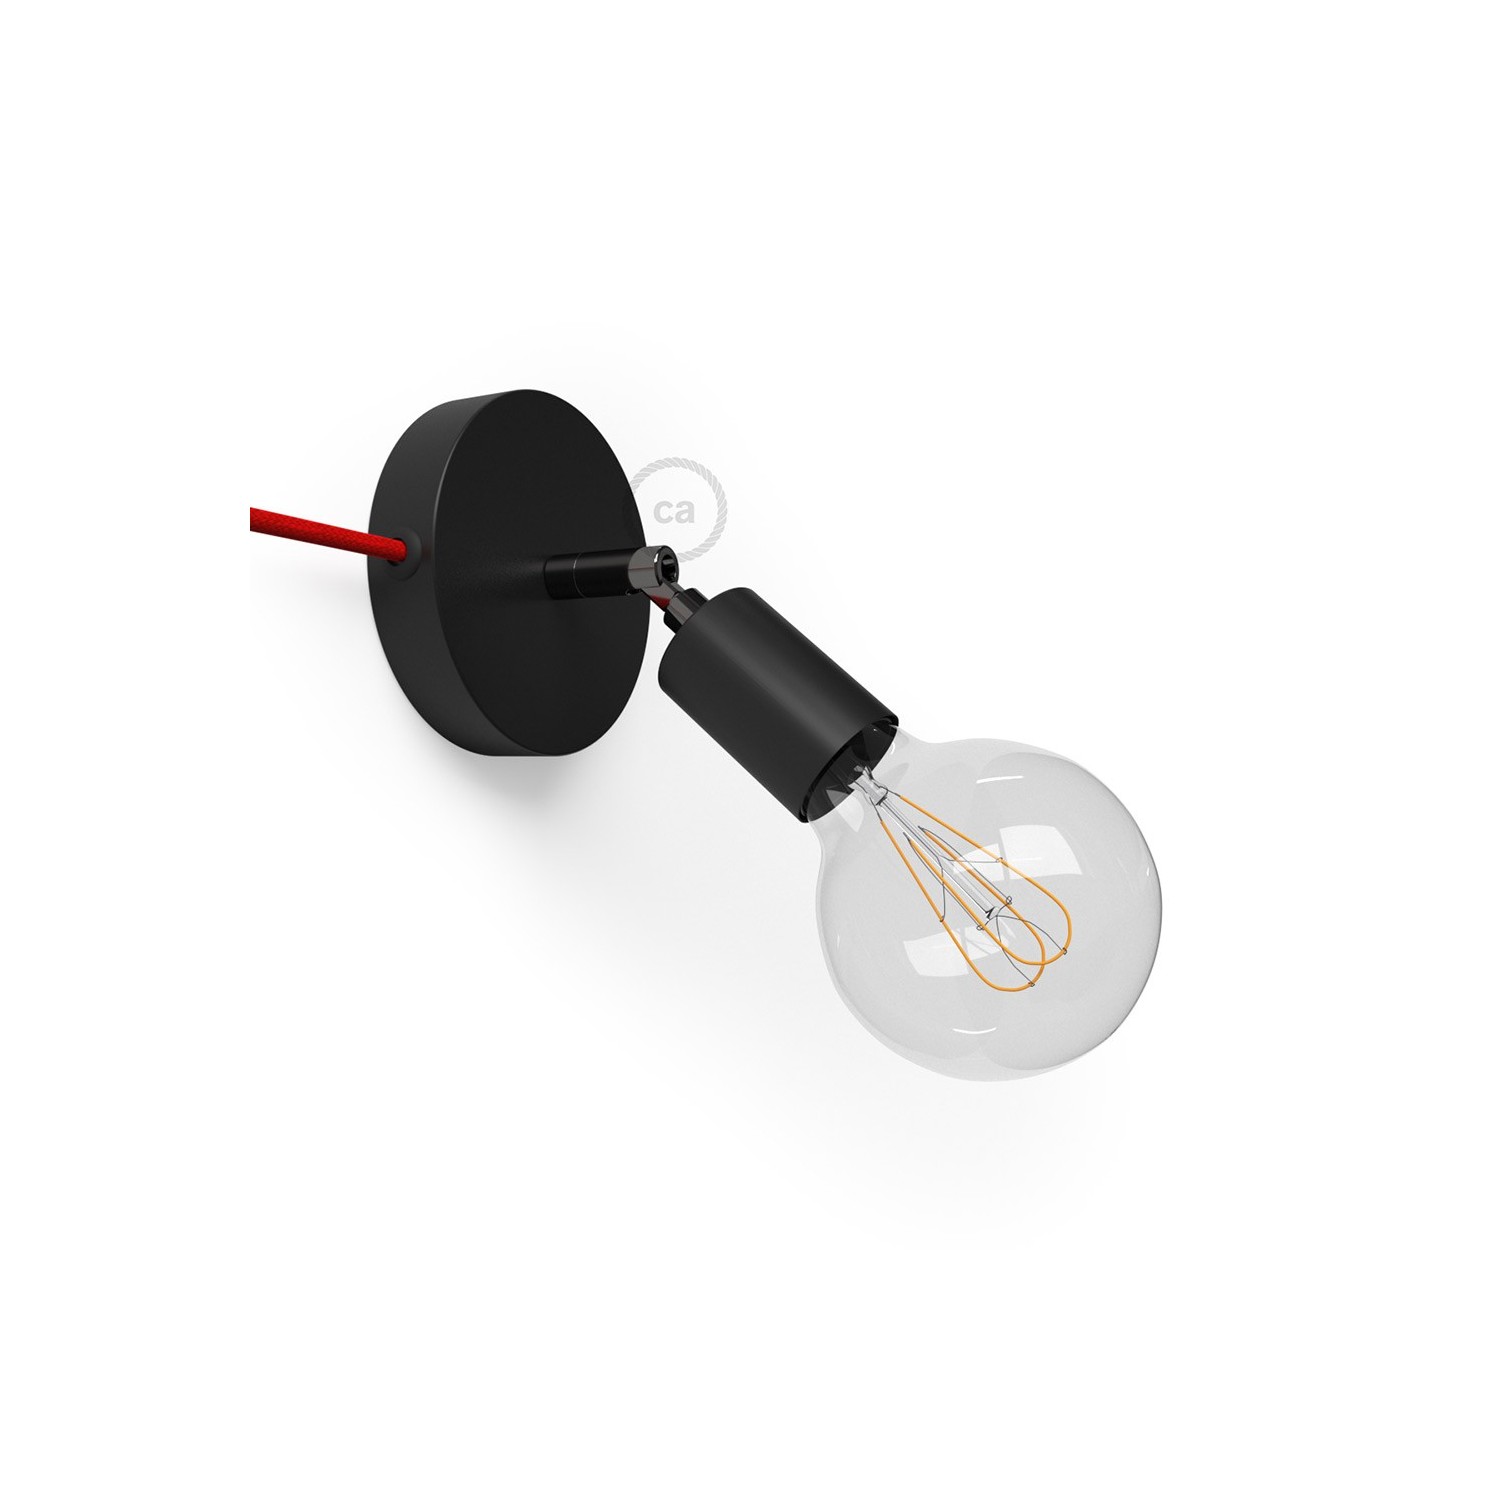 Spostaluce Metallo 90°, černý nastavitelný zdroj světla s textilním kabelem a bočními otvory